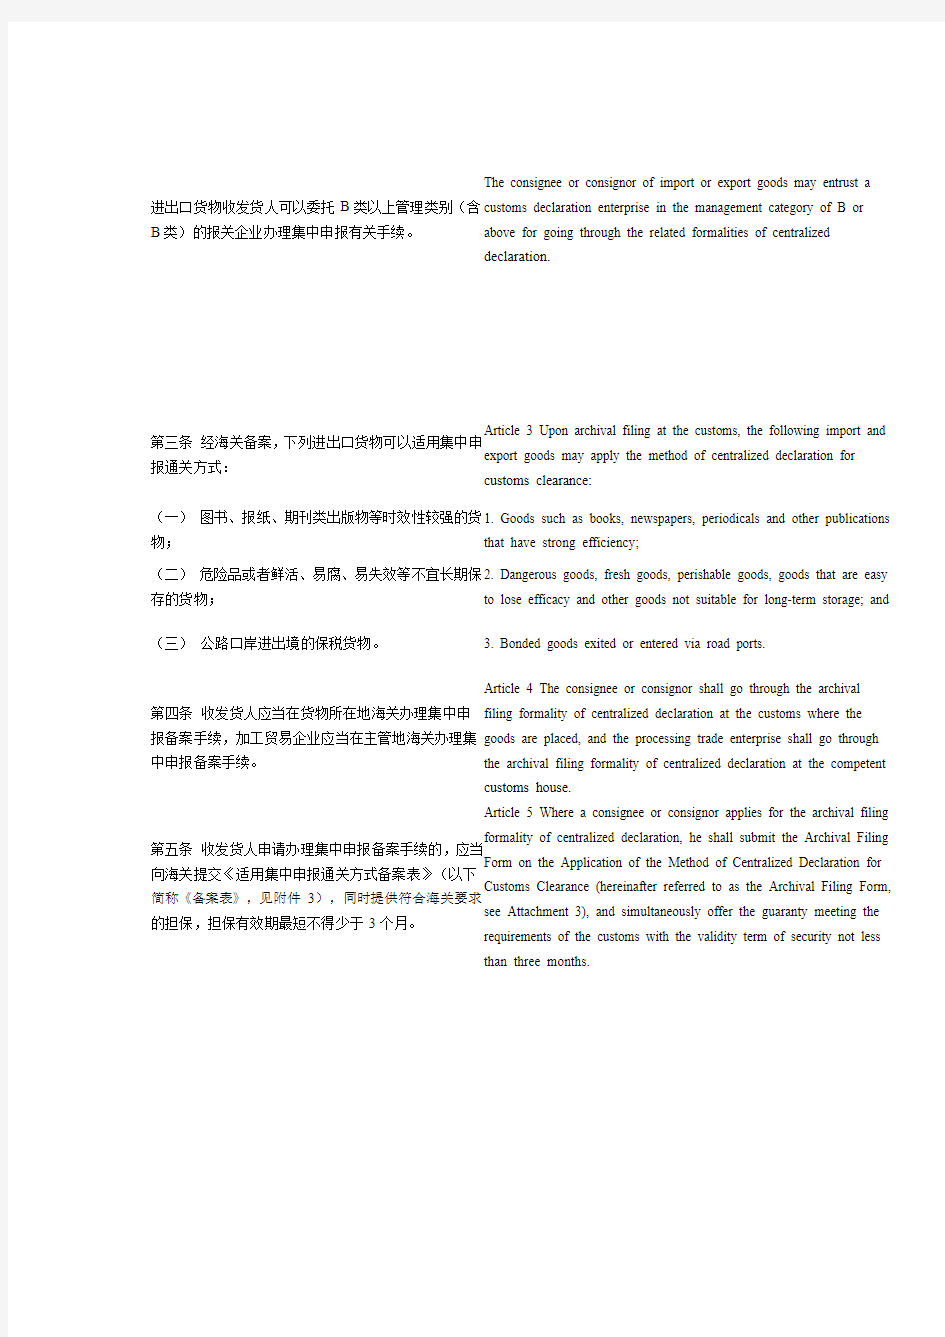 中华人民共和国海关进出口货物集中申报管理办法